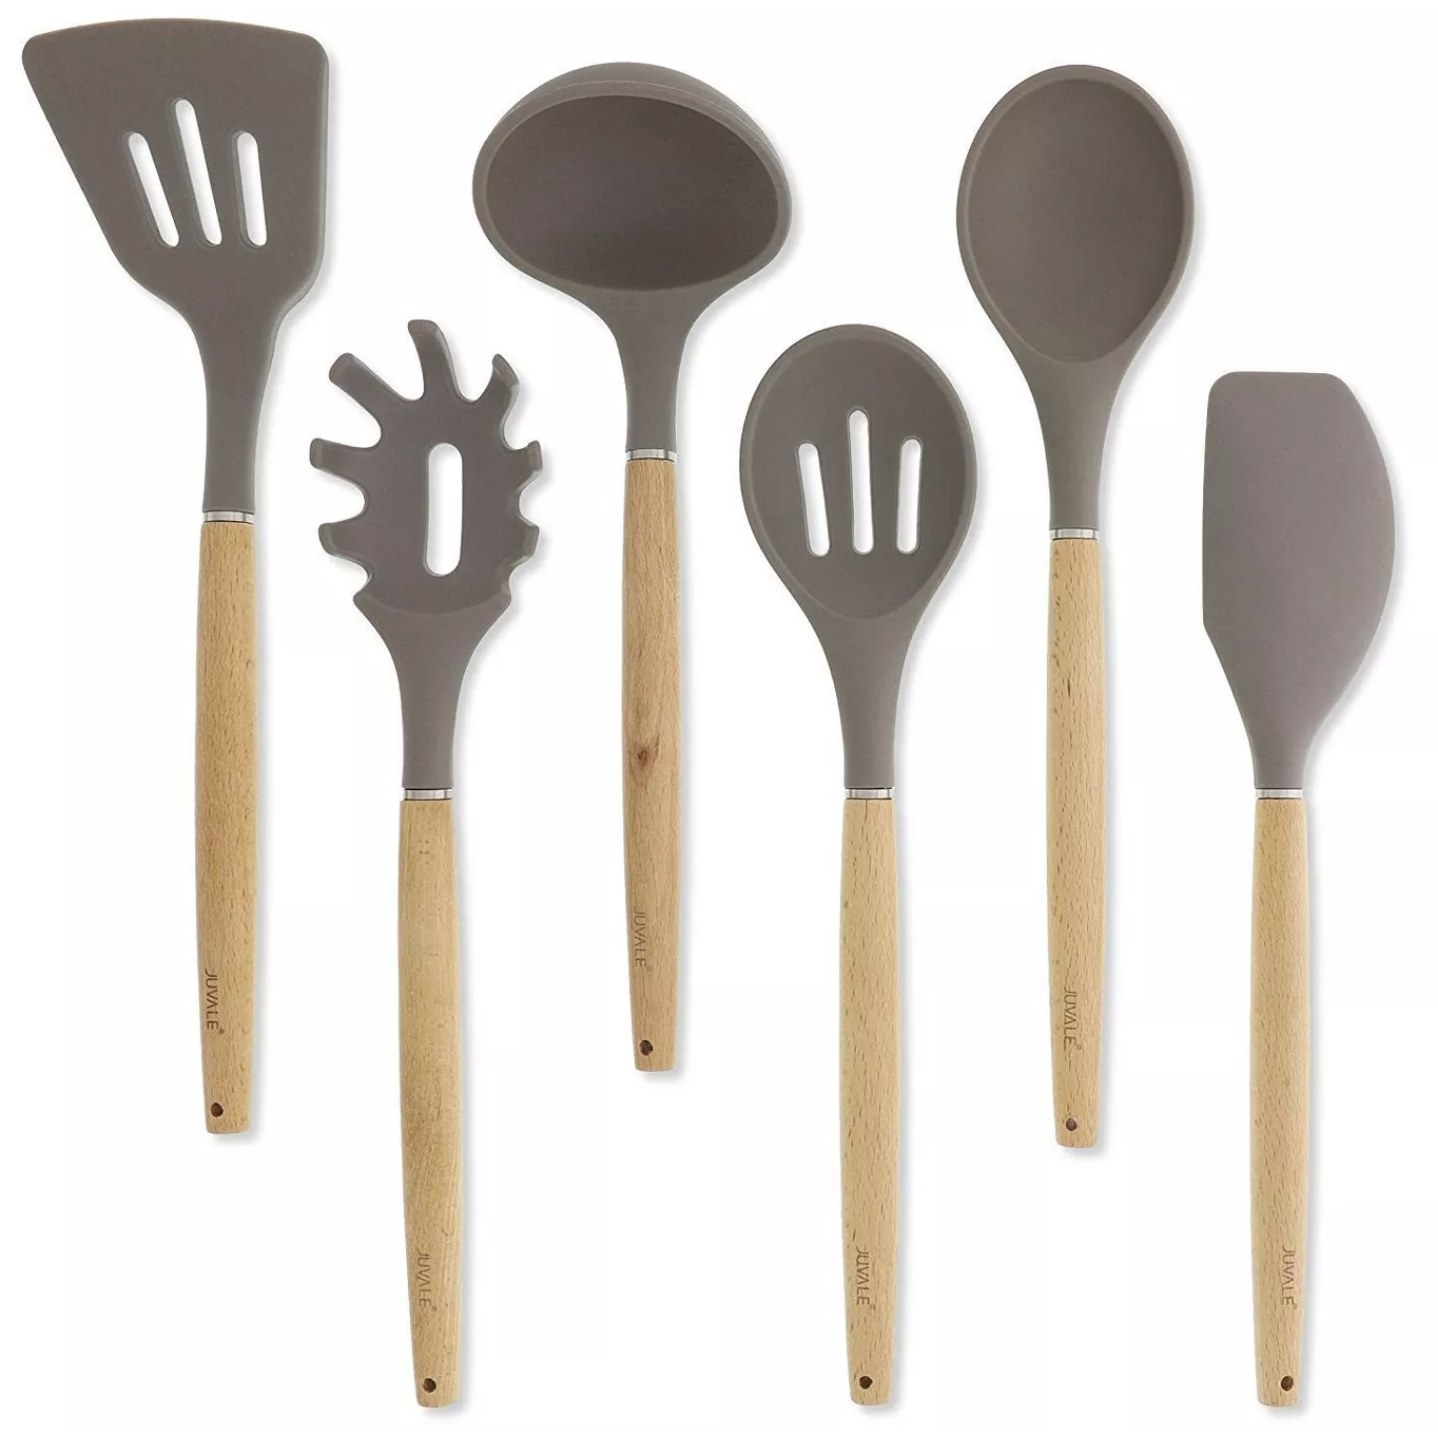 The wooden utensils